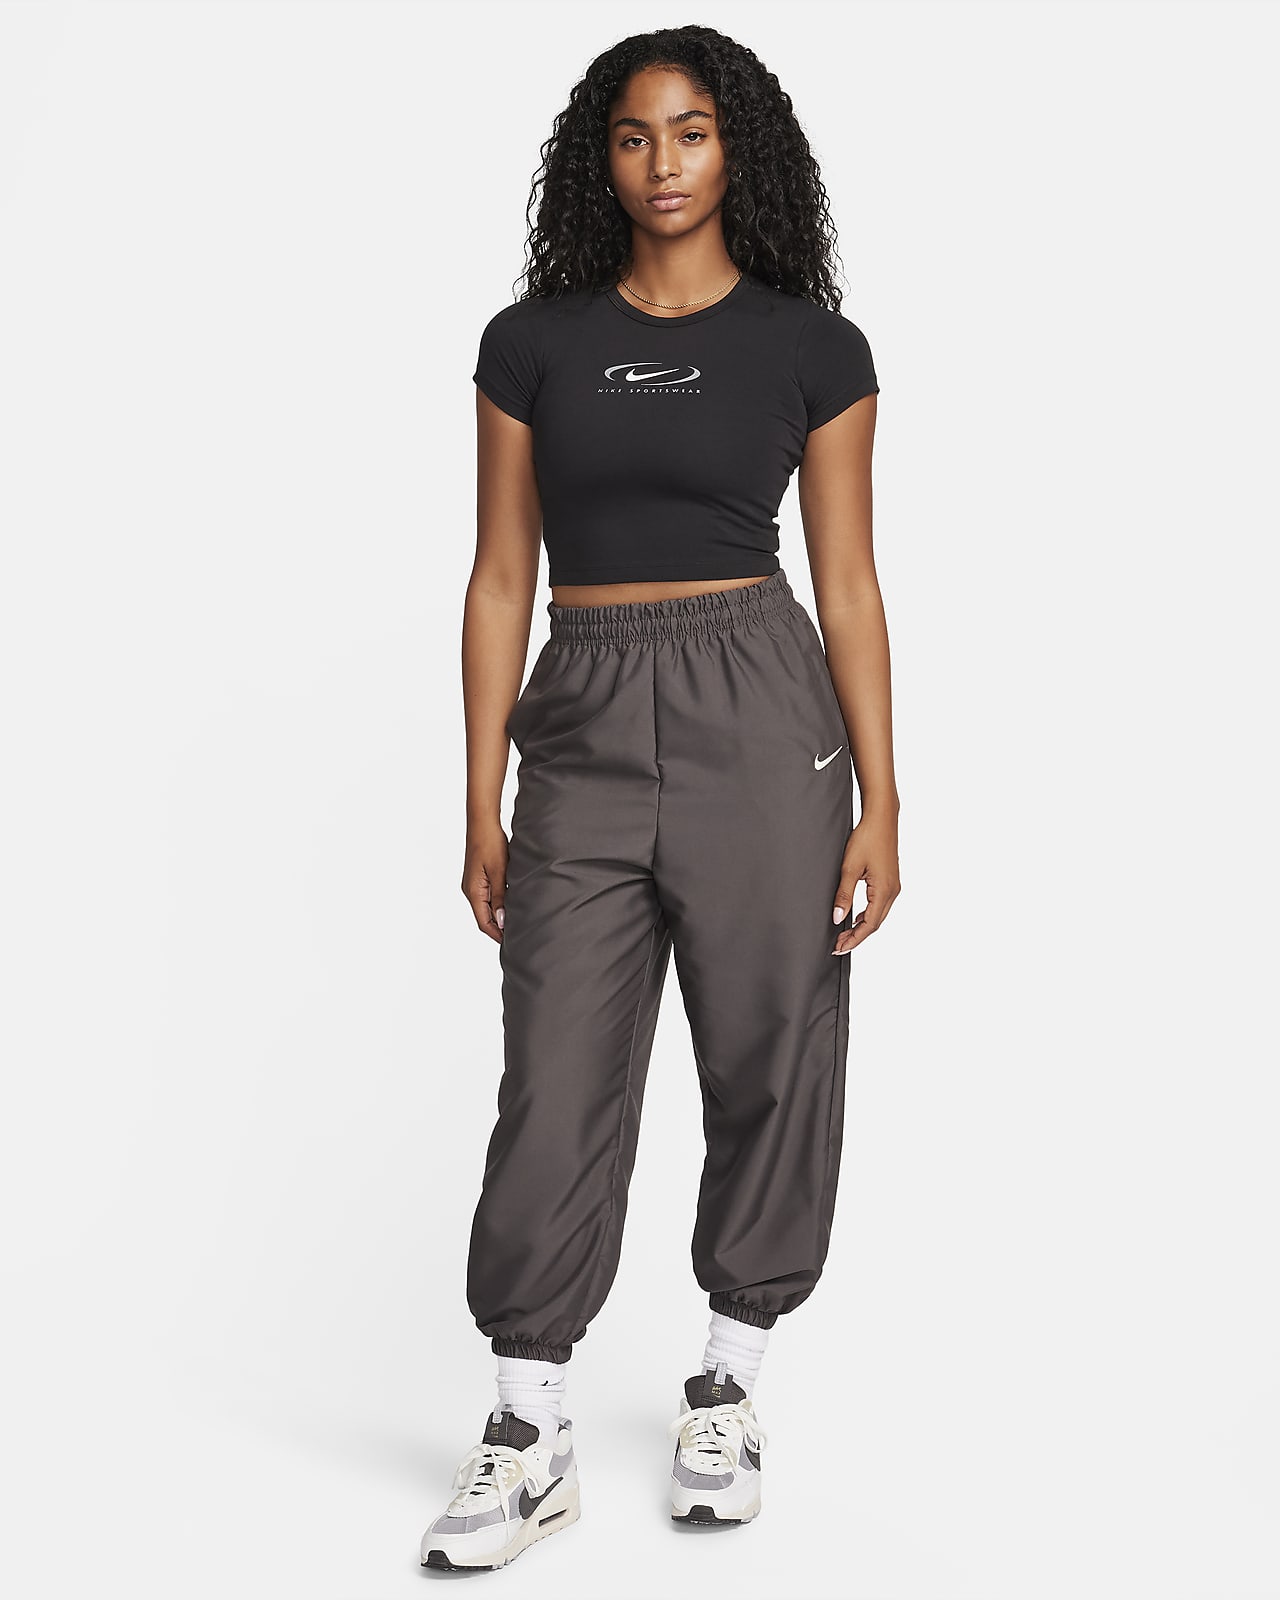 Pantalon Lycra Mujer Nike Dr6175-437 - peopleplays